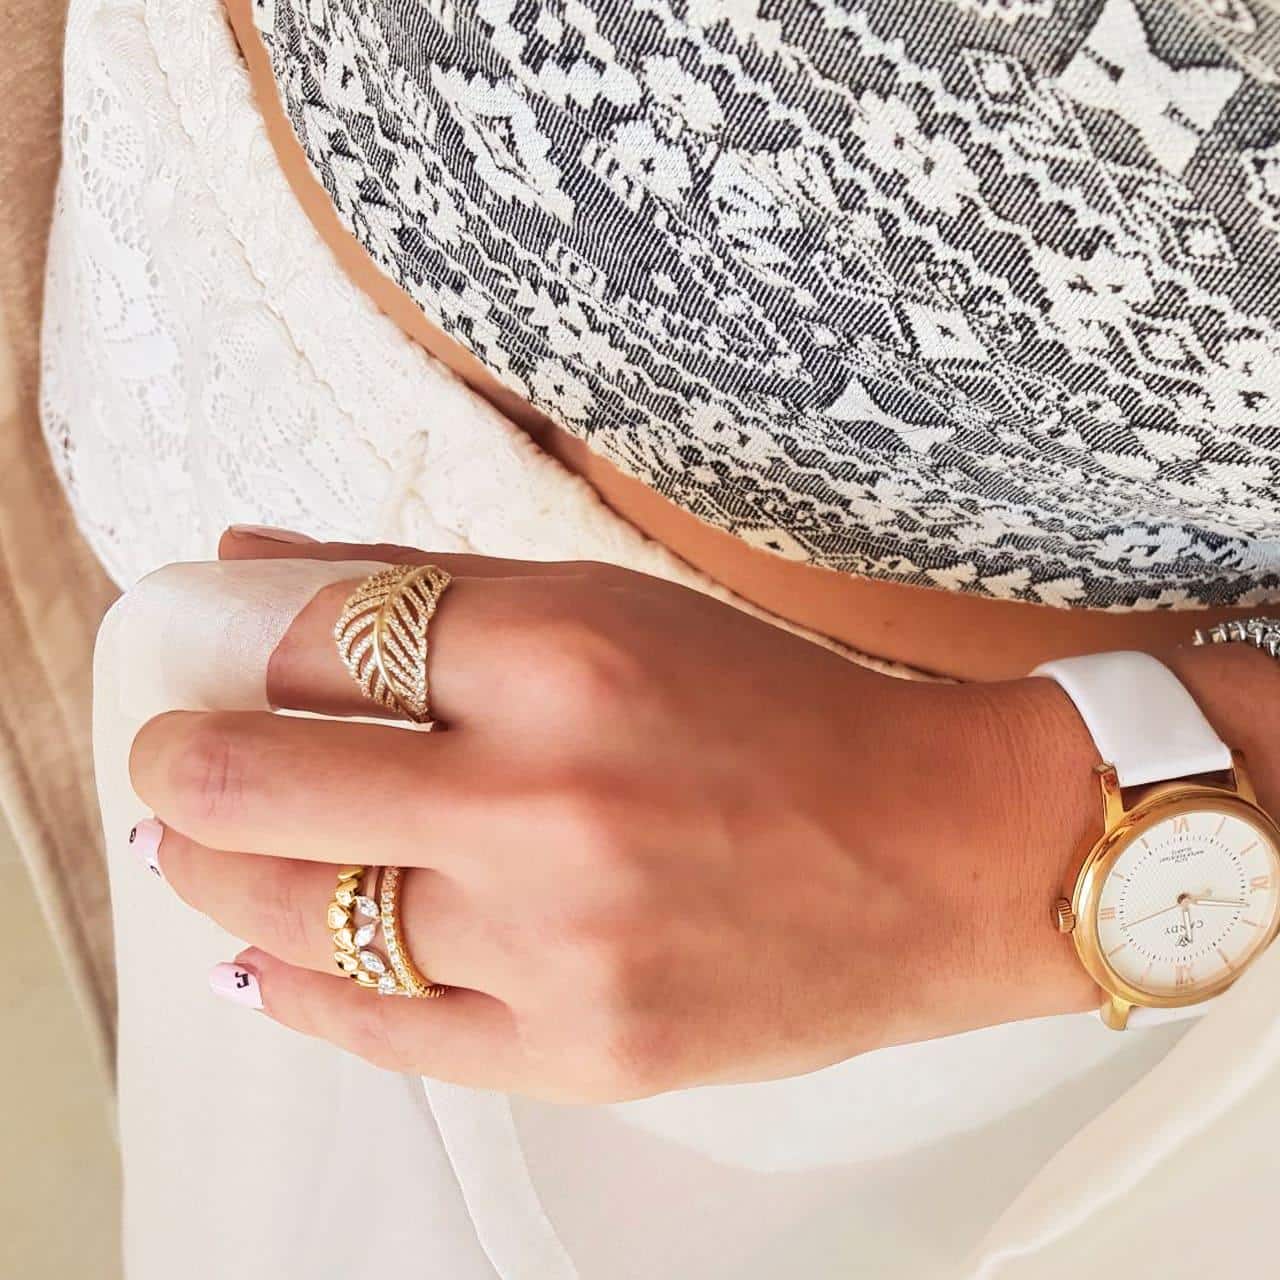 Goldene Edelstahluhr mit weissem Lederband in puren Design sommerlich kombiniert mit goldenen Ringen aus Silber